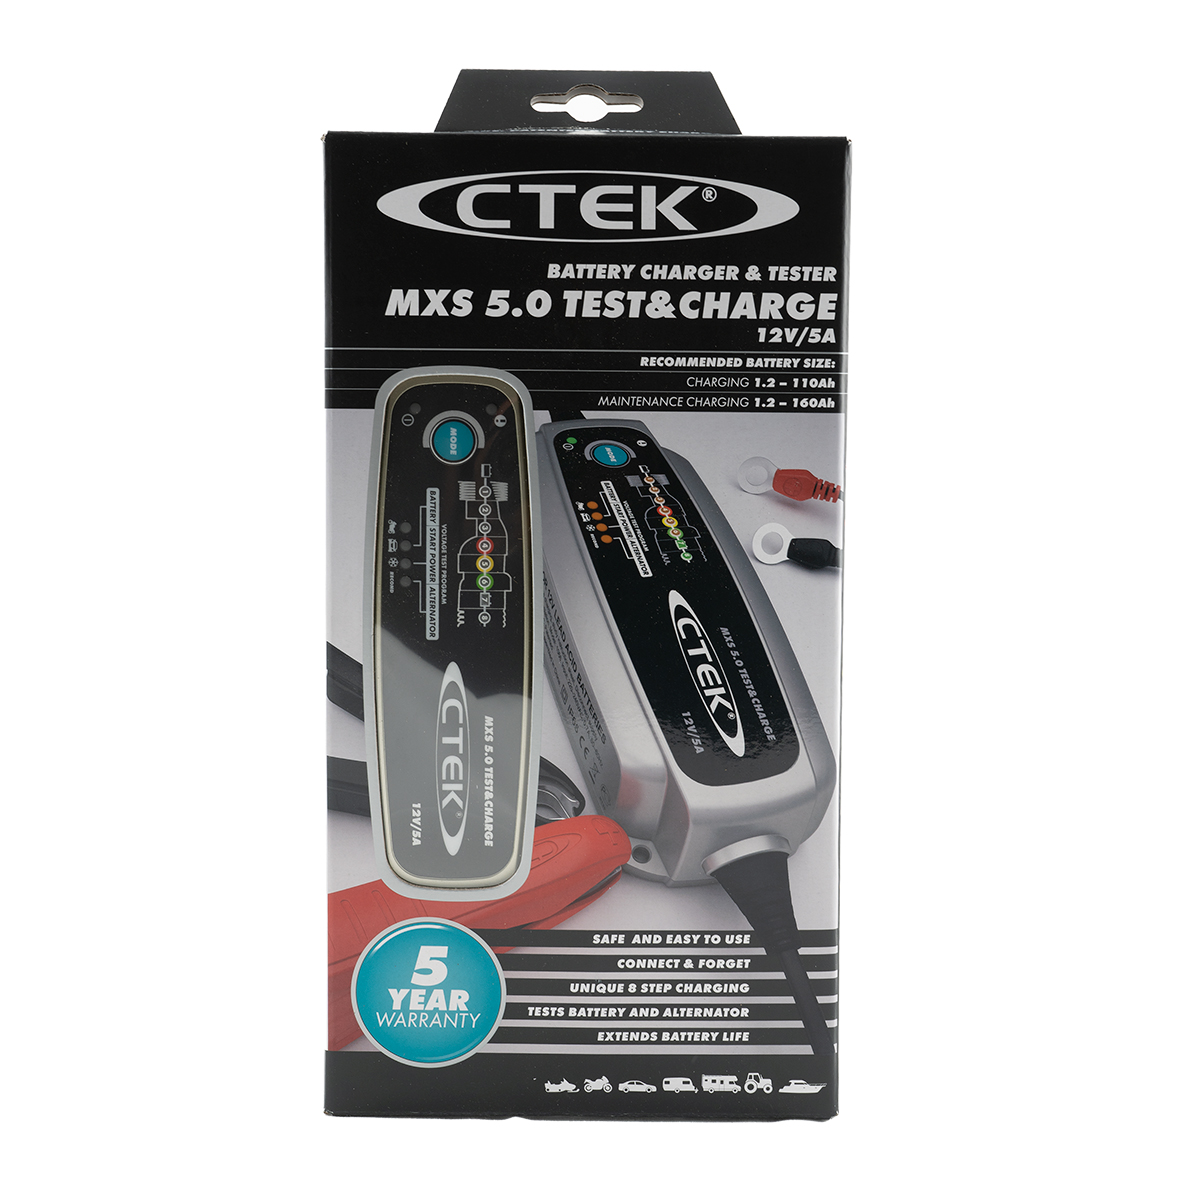 CTEK MXS 5.0 TEST&CHARGE Test- und Ladegerät für Autobatterien 12V